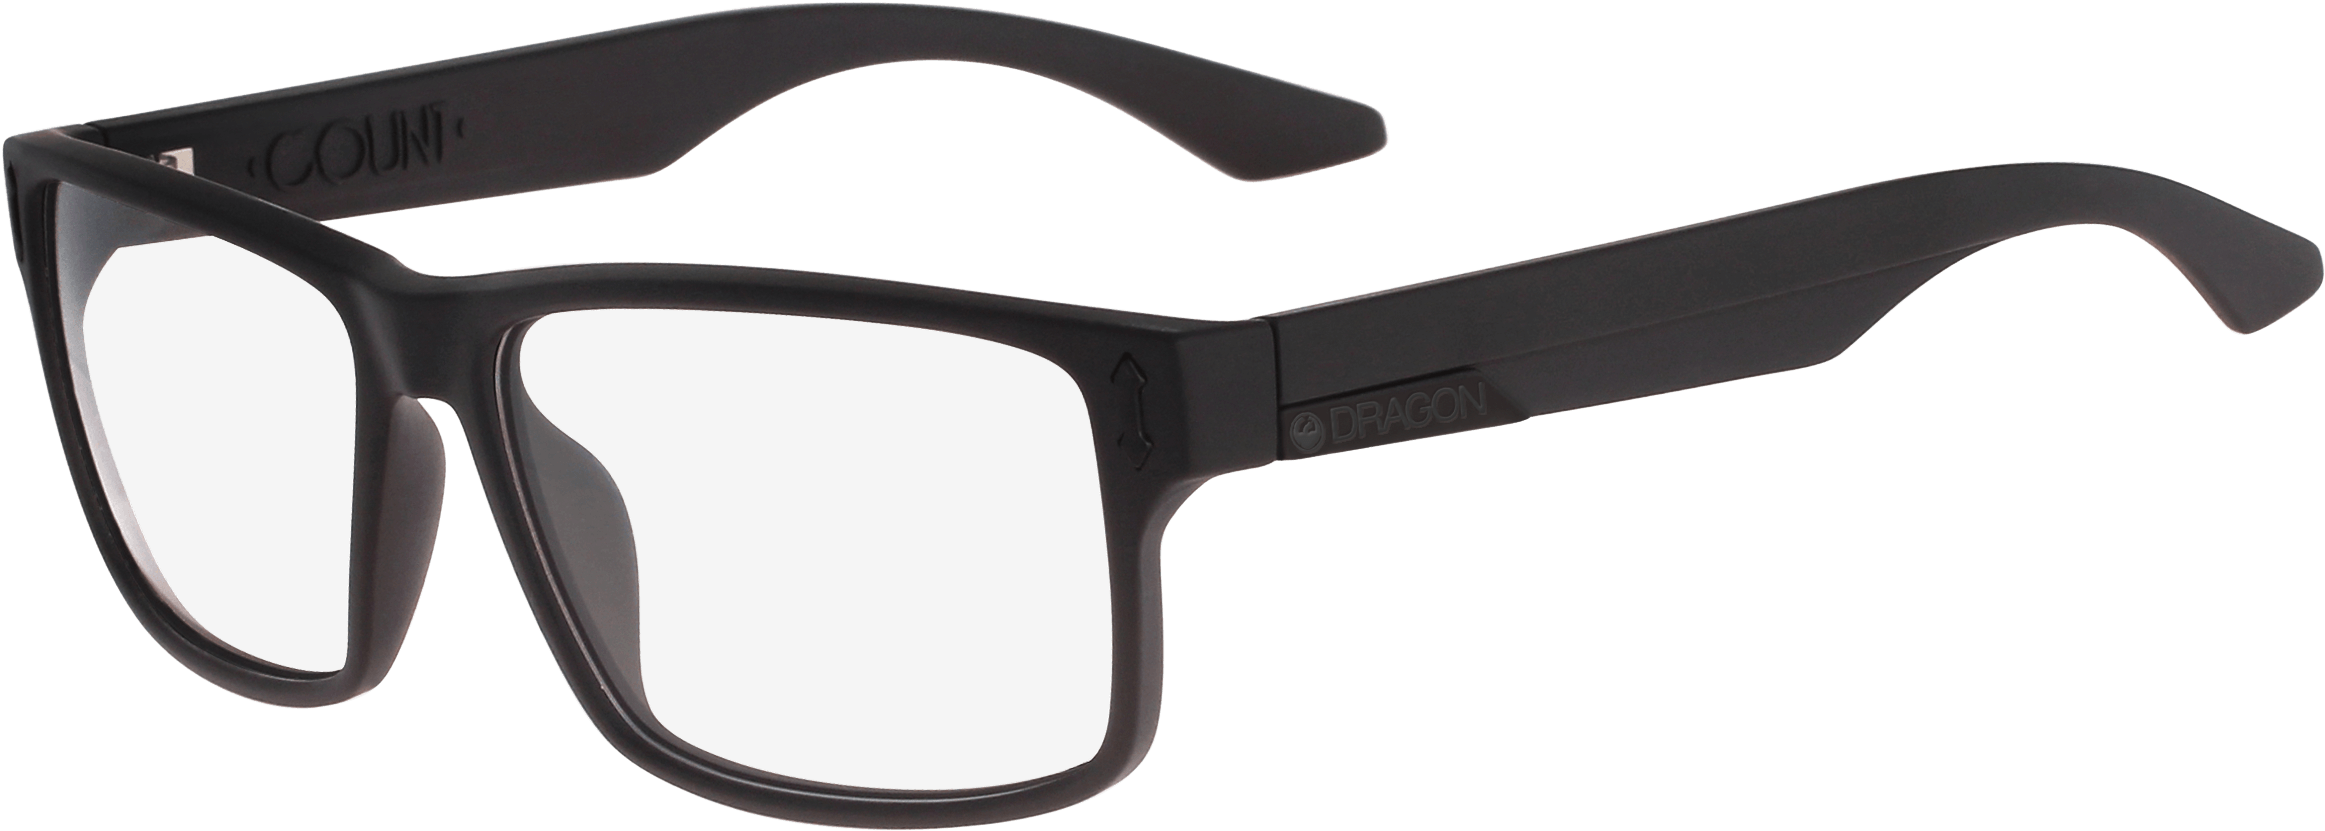 Black Modern Eyeglasses Transparent Background PNG image